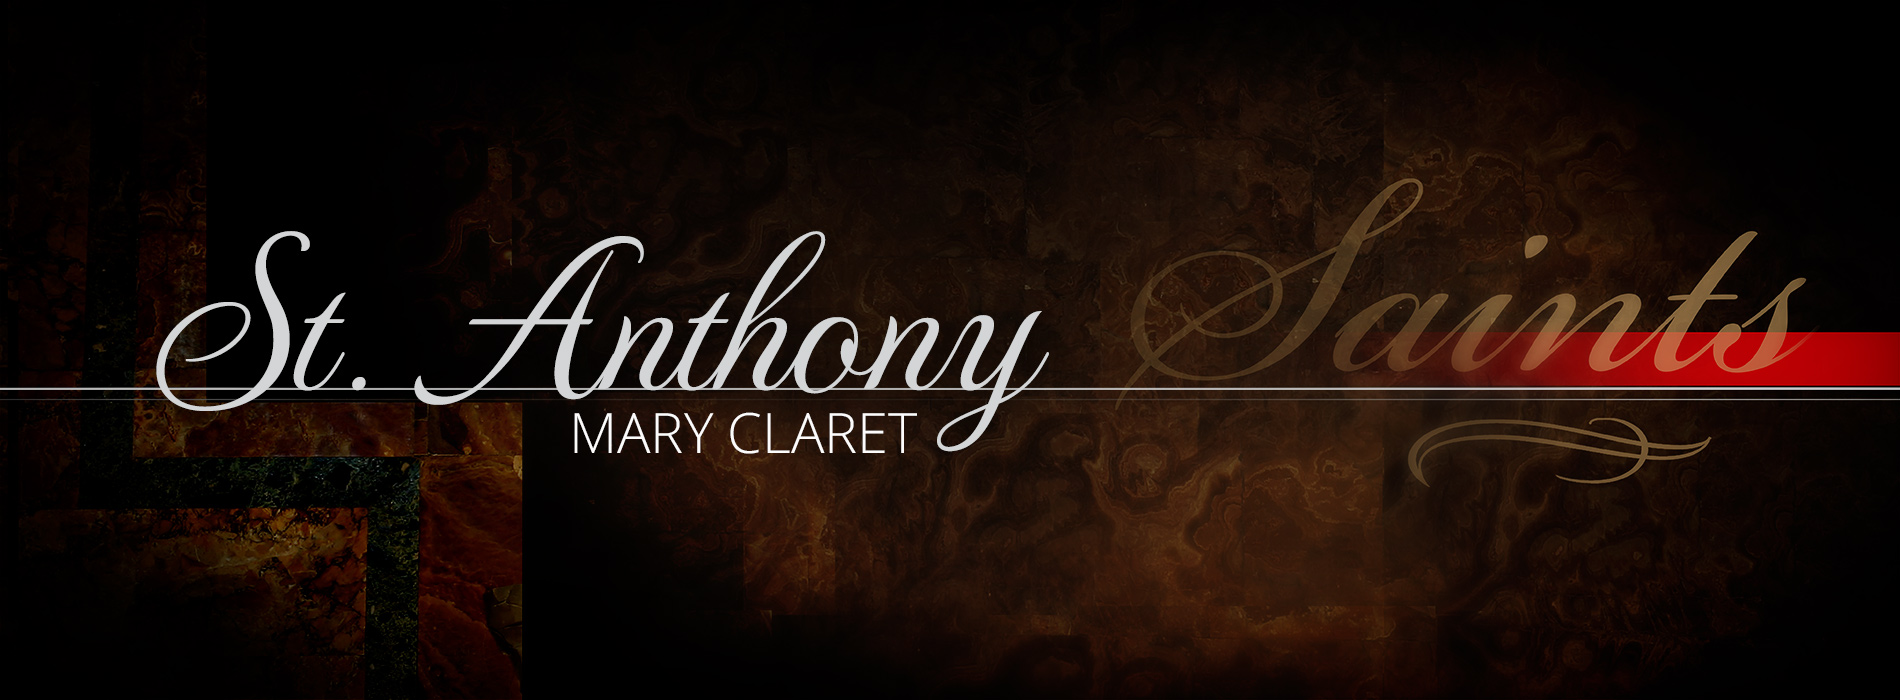 St. Anthony Mary Claret